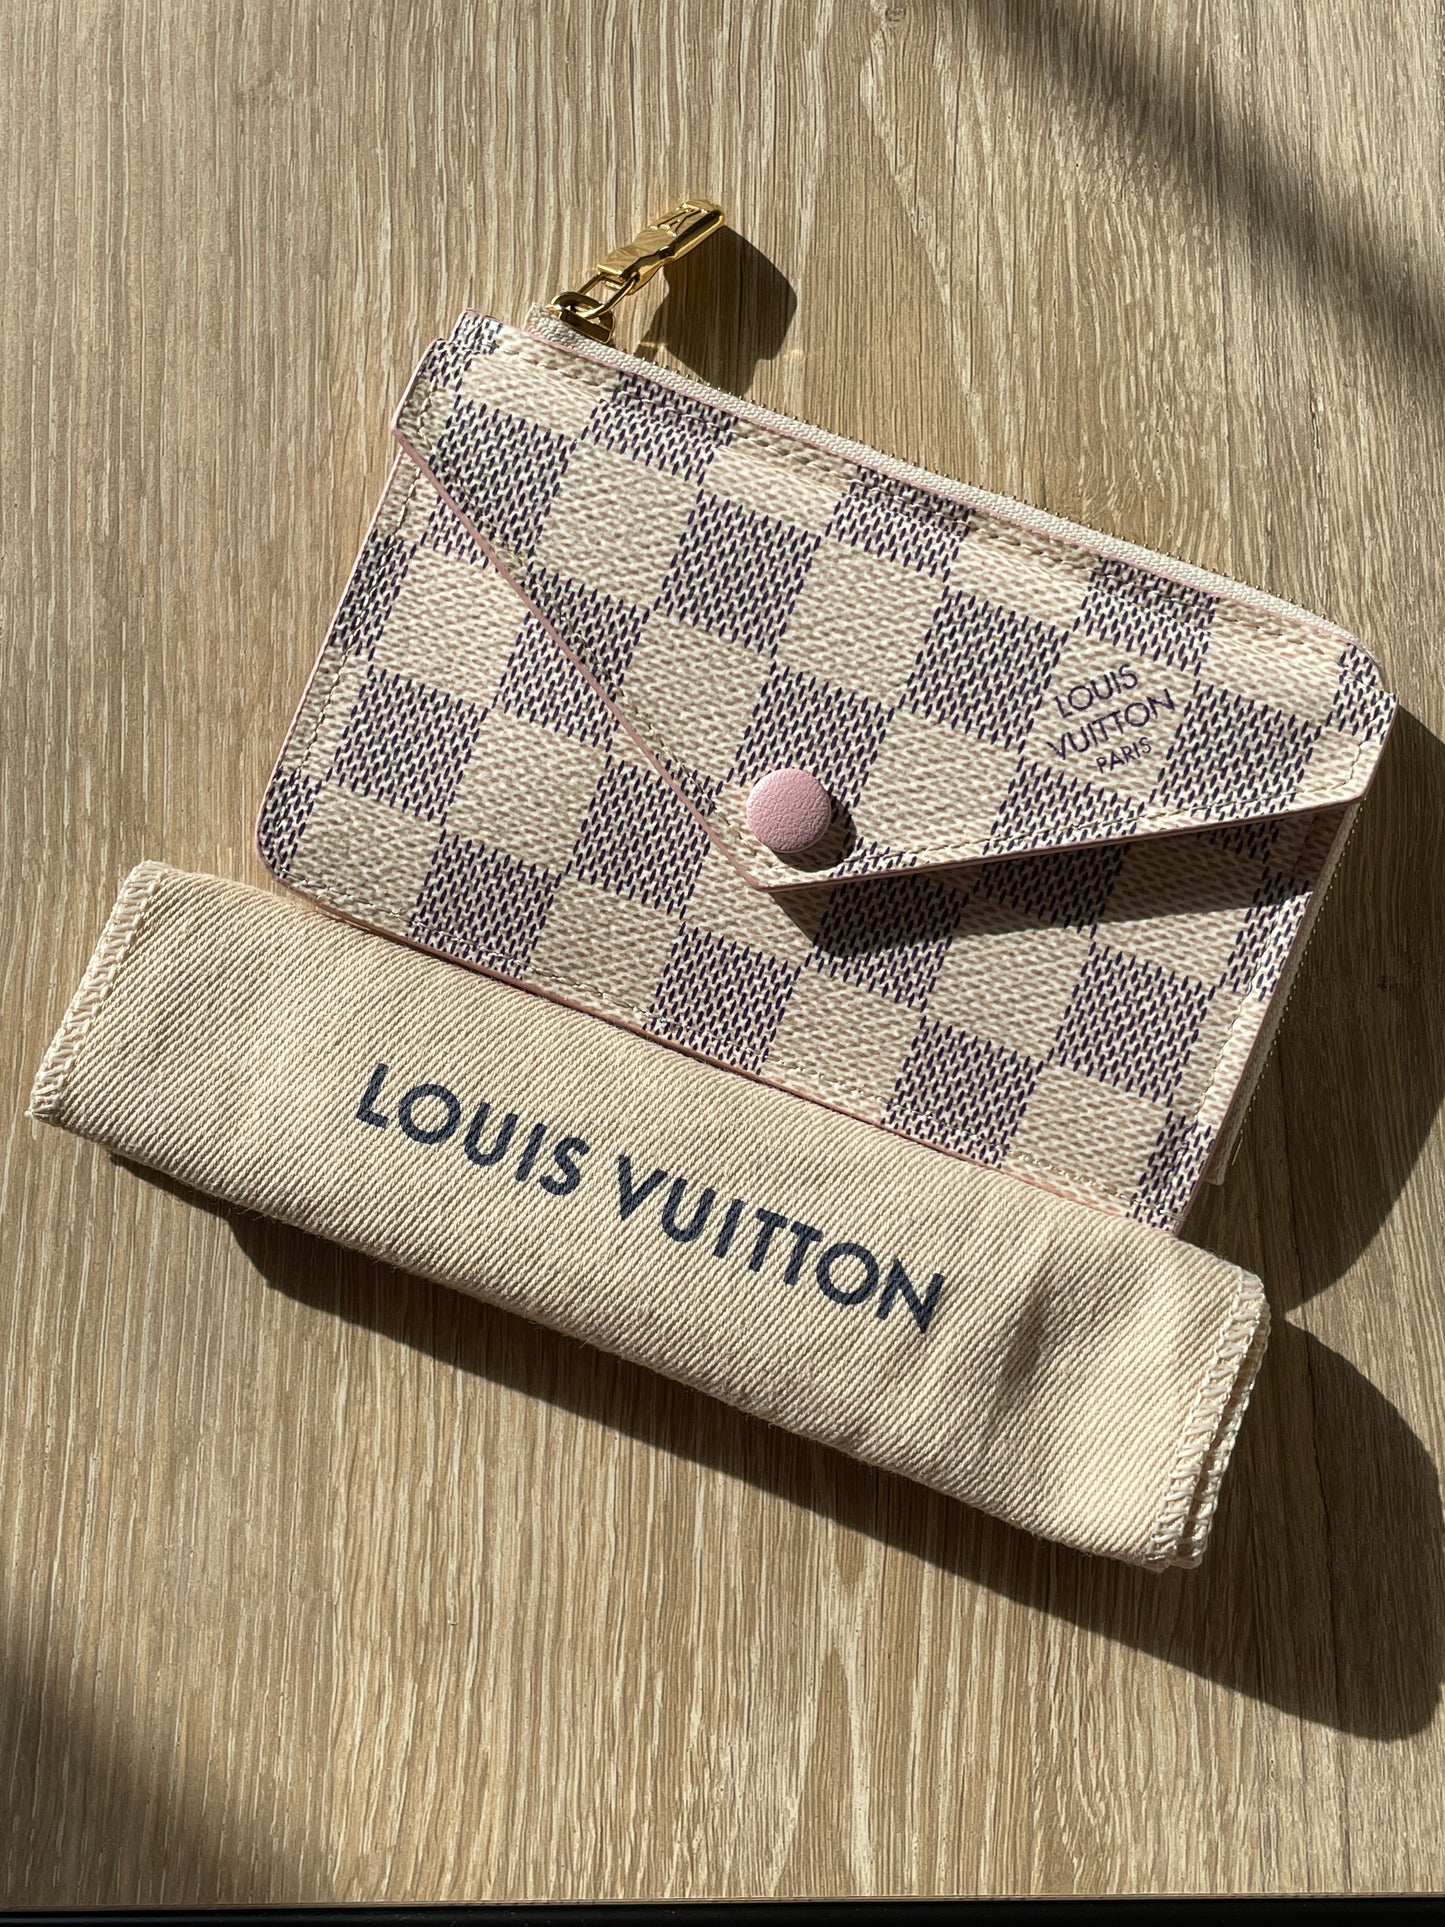 Louis Vuitton Card Holder Recto Verso Damier Ebene Rose Ballerine